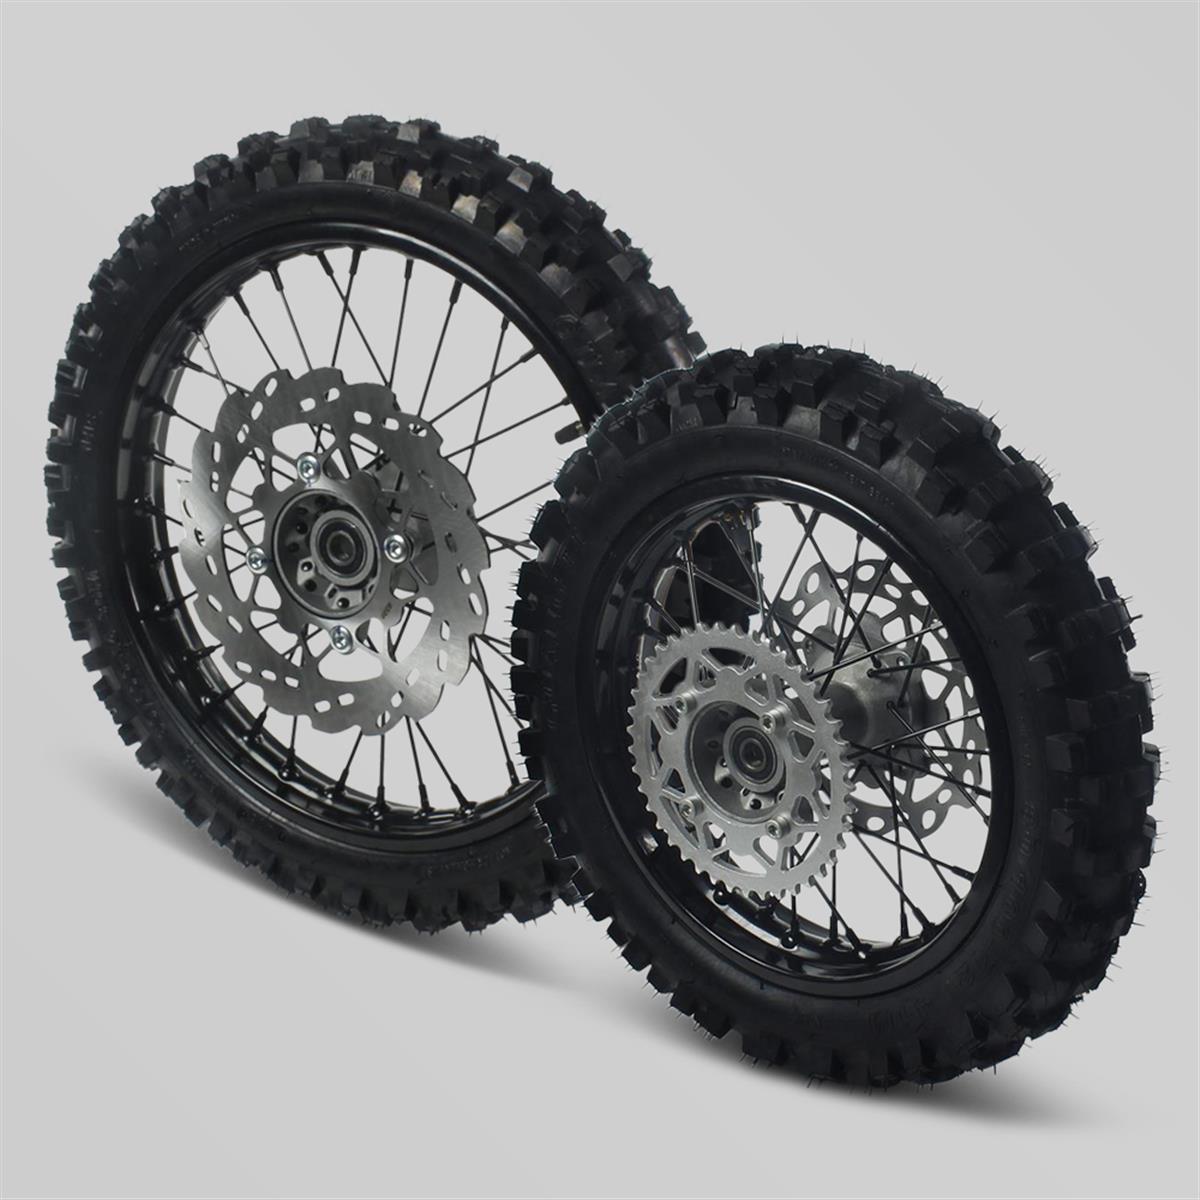 Pack de roue complète 12"/14" pour Dirt Bike / Pit Bike / Minimoto |  Smallmx - Dirt bike, Pit bike, Quads, Minimoto